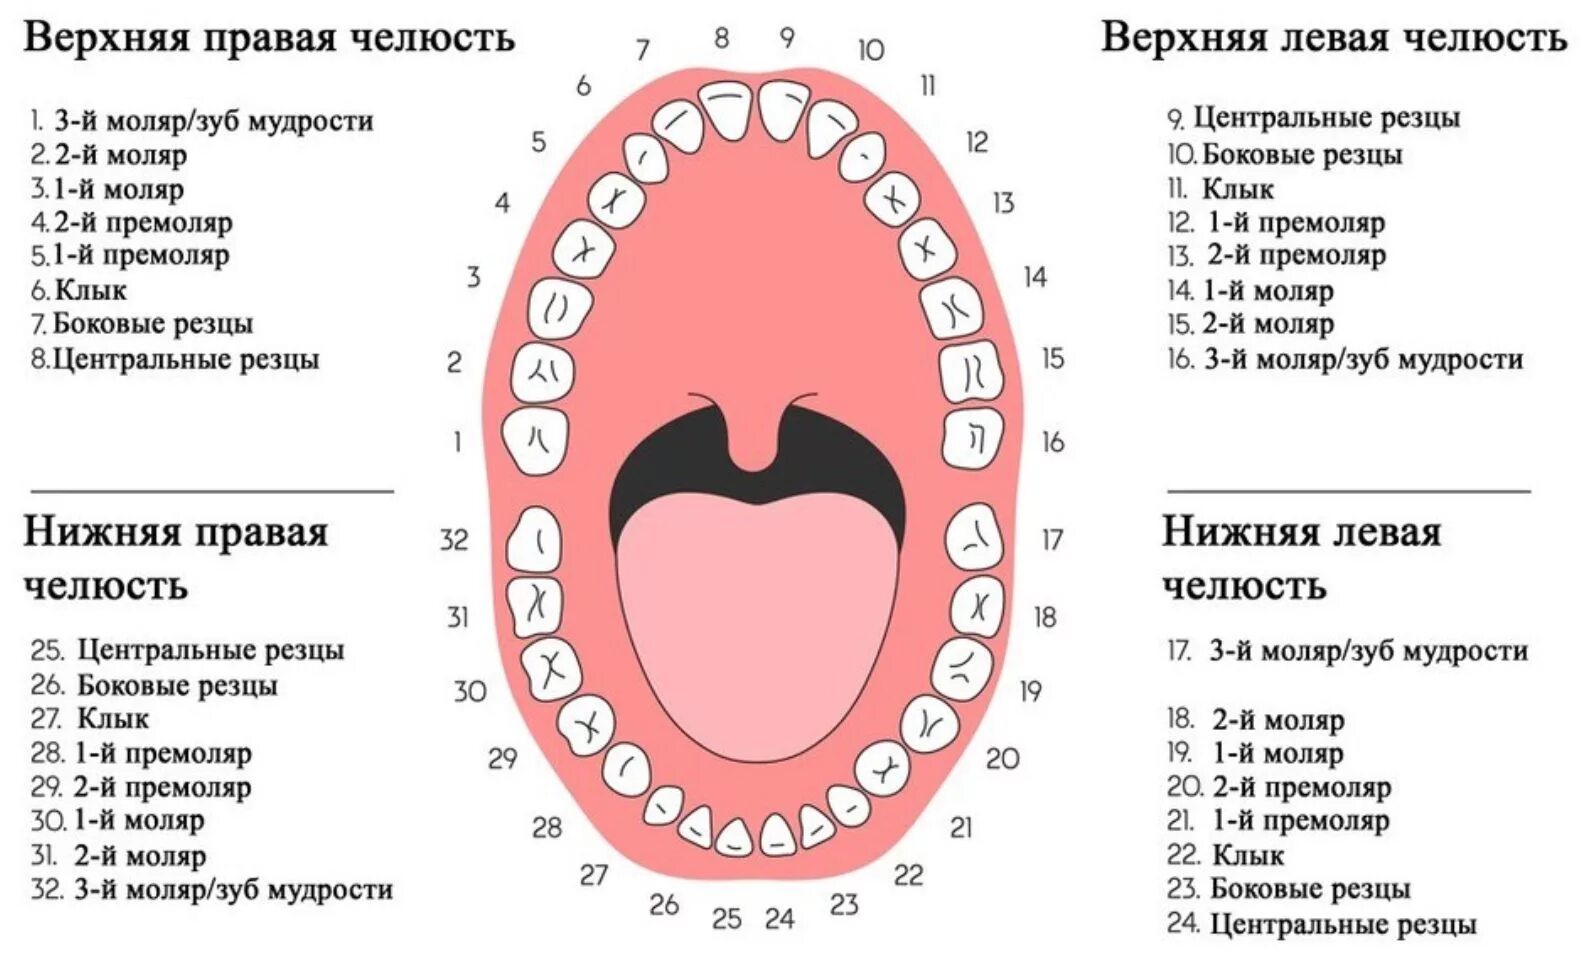 Нумерация зубов в стоматологии схема у взрослых. Зубы нижняя челюсть нумерация зубов. Нумерация детских зубов в стоматологии схема. Нумерация зубов человеческой челюсти. Схема зубов человека с нумерацией стоматологии.